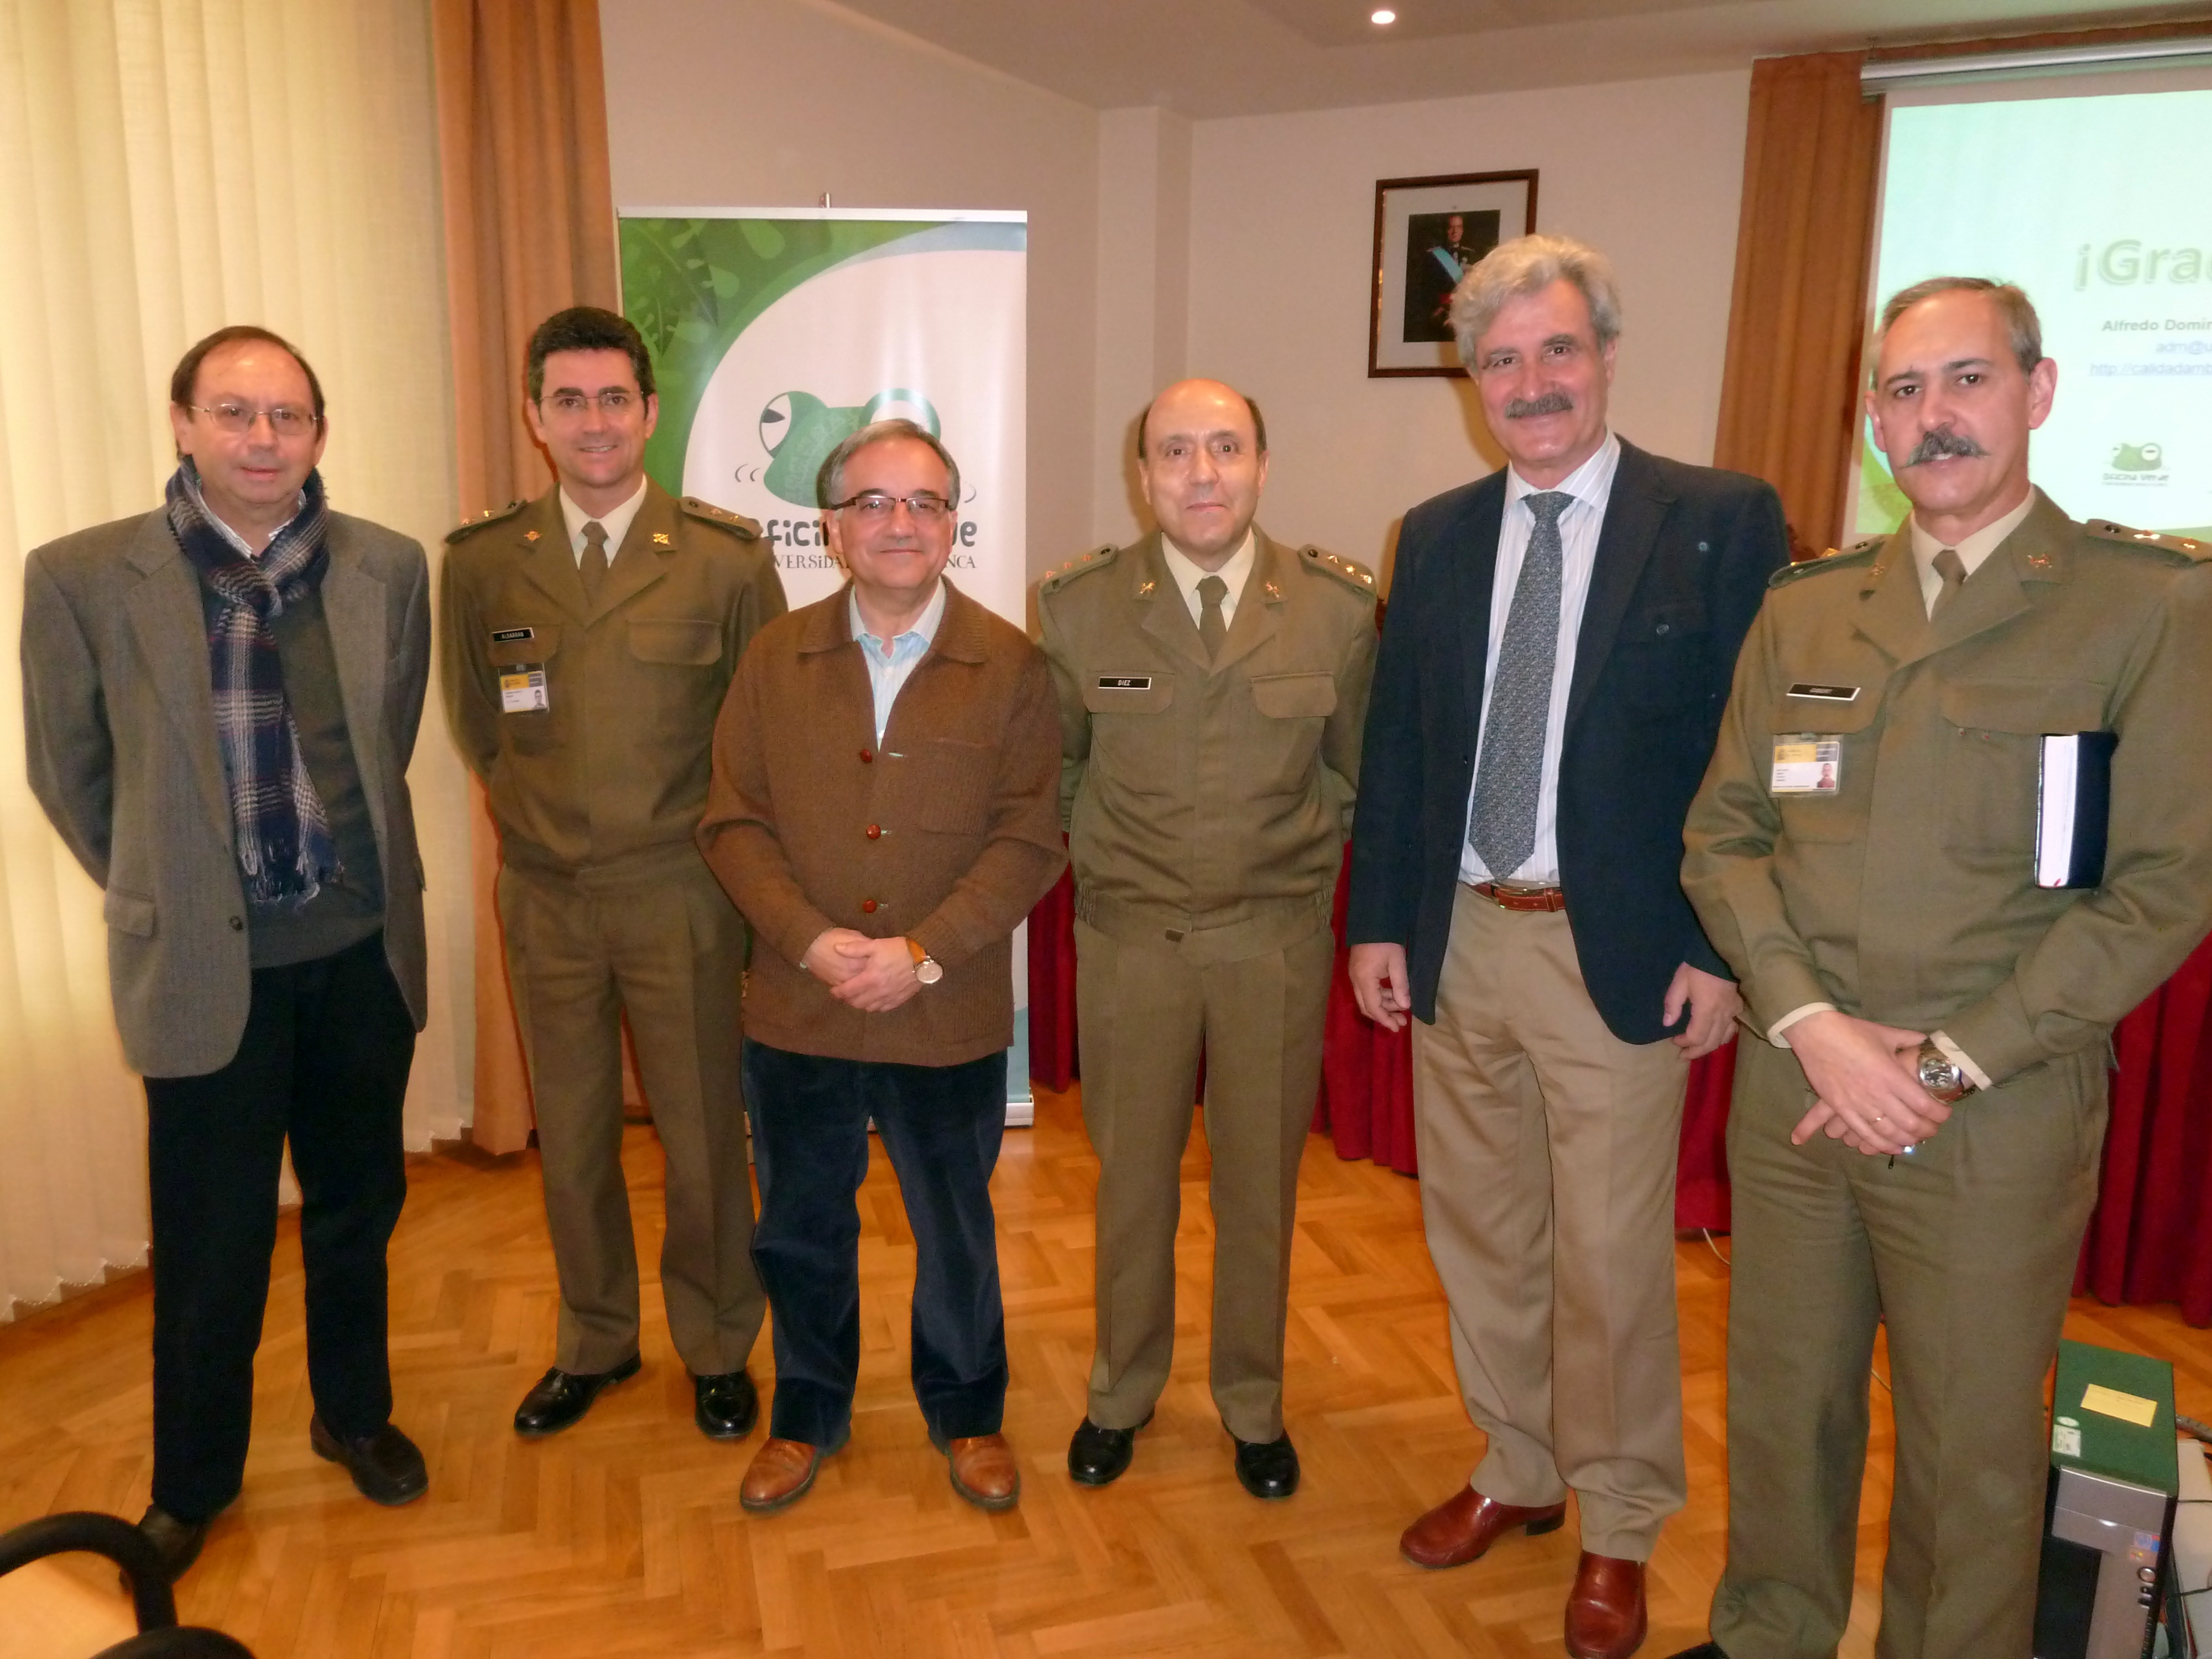 La Oficina Verde ofrece una charla-coloquio en la Subdelegación de Defensa de Salamanca sobre “Buenas prácticas en oficinas”.